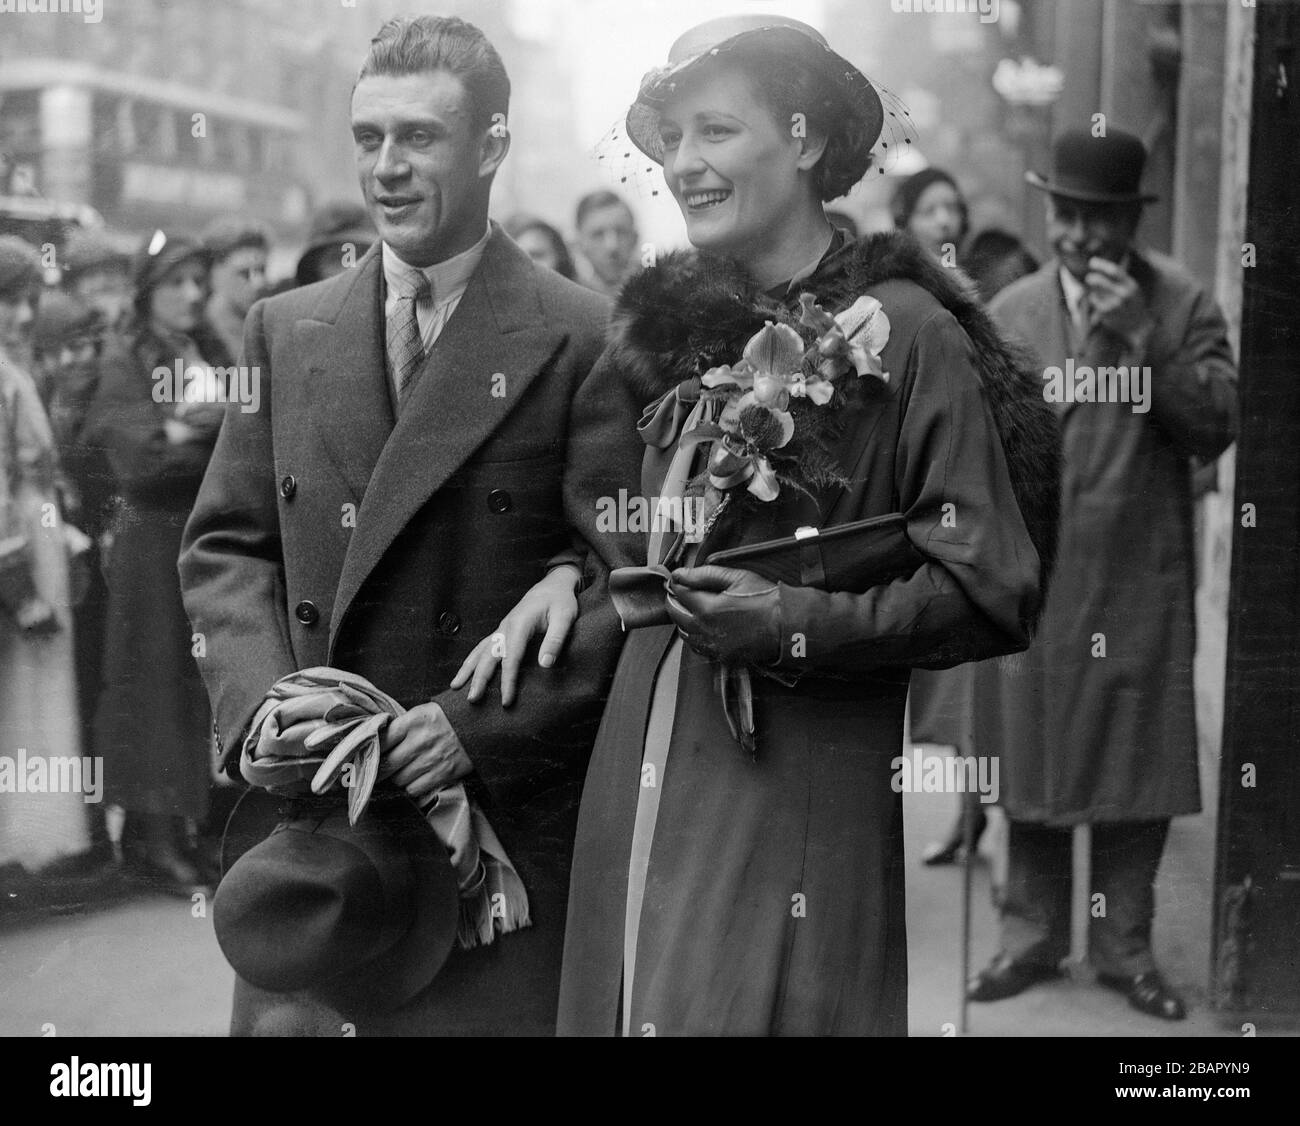 Vintage Schwarz-Weiß-Foto. April 1934. John R. Skeaping, der berühmte Bildhauer, der für sein kurioses und futuristisches Werk bekannt ist, heiratete den Fräulein Norwenna Ward in St. Ethelbert's Church, Bishopsgate, London. Stockfoto